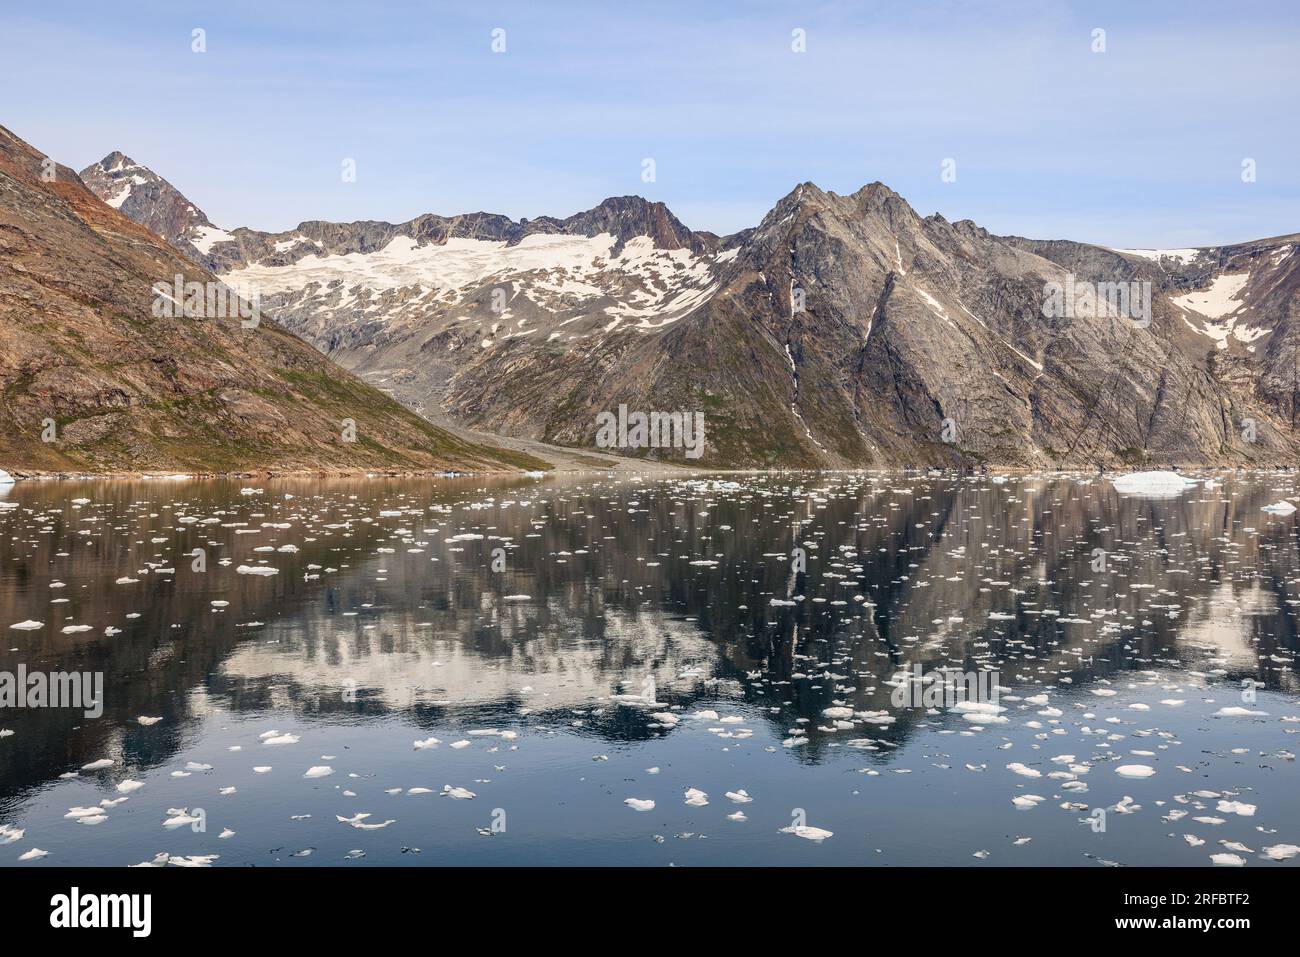 belle image de paysage arctique de montagnes rocheuses et glacier avec de la neige reflétée dans l'eau calme du son prince christian groenland Banque D'Images